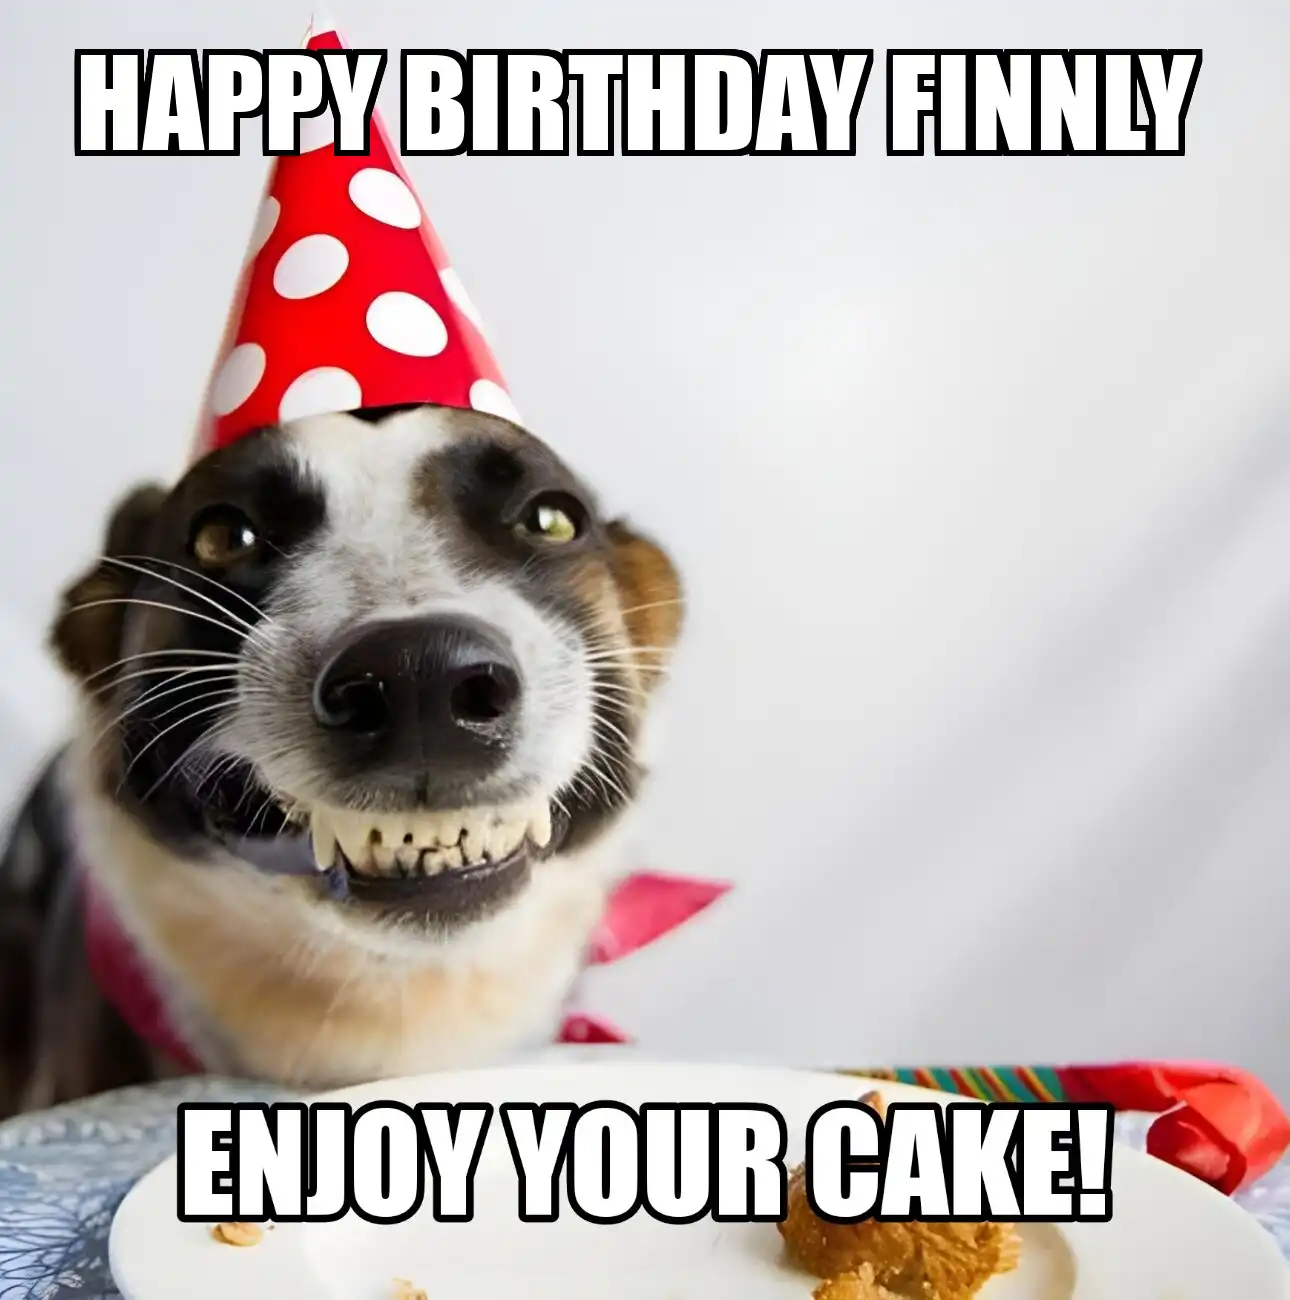 Happy Birthday Finnly Enjoy Your Cake Dog Meme